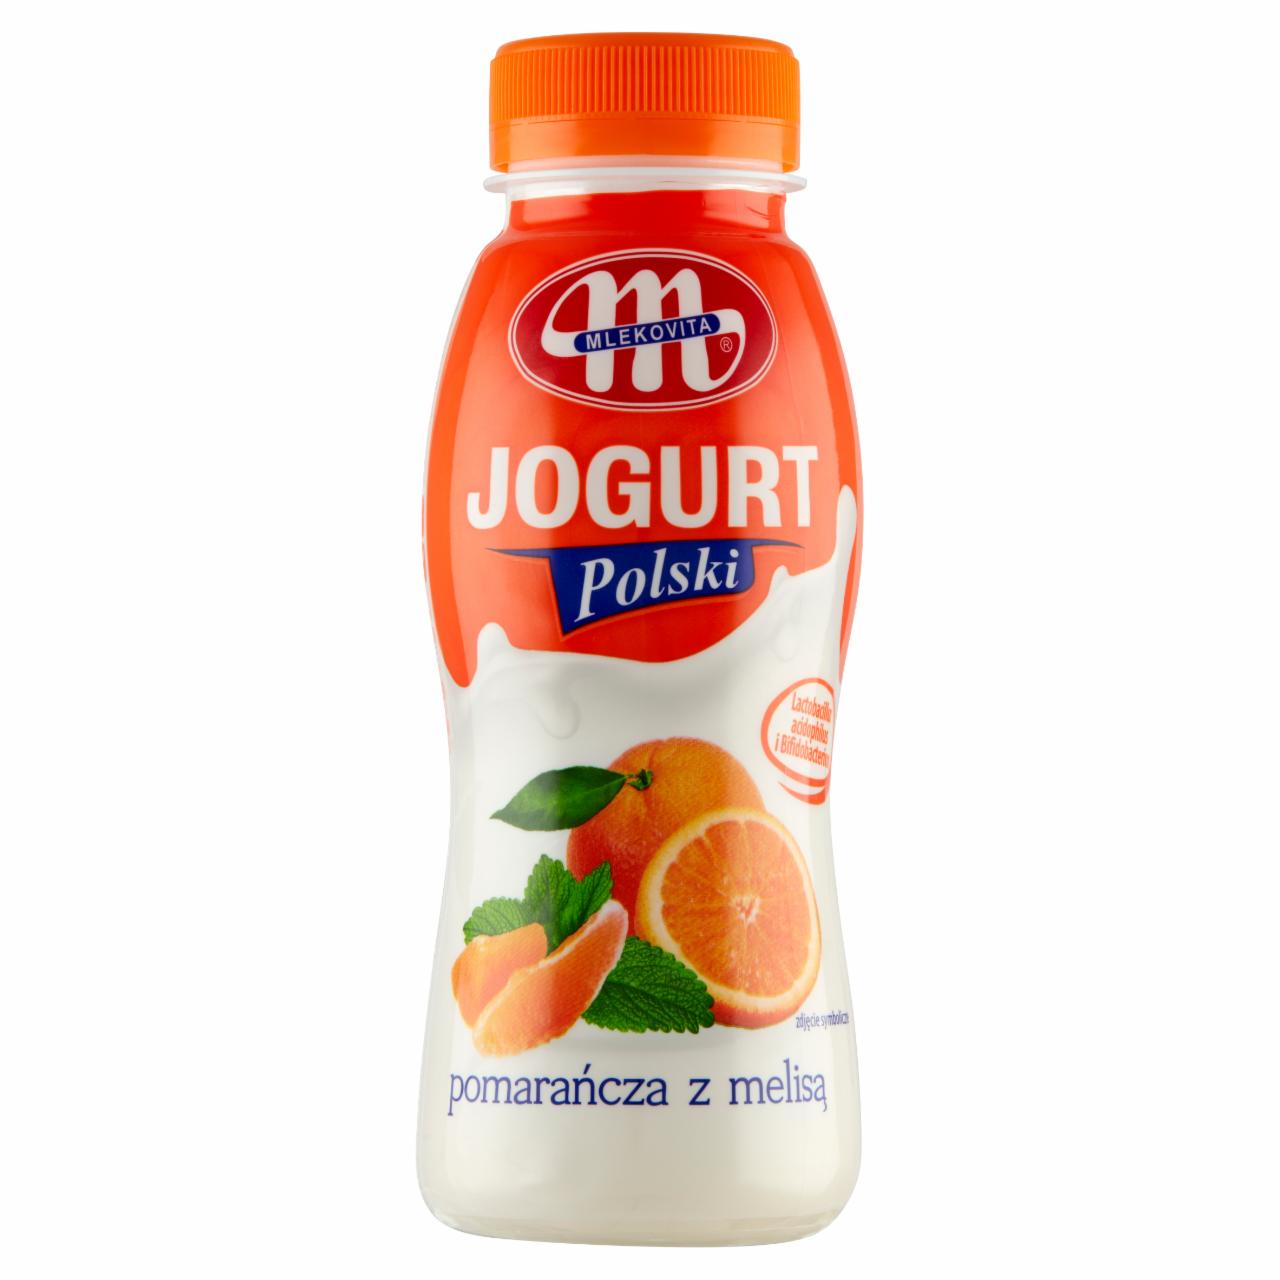 Zdjęcia - Mlekovita Jogurt Polski pomarańcza z melisą 250 g